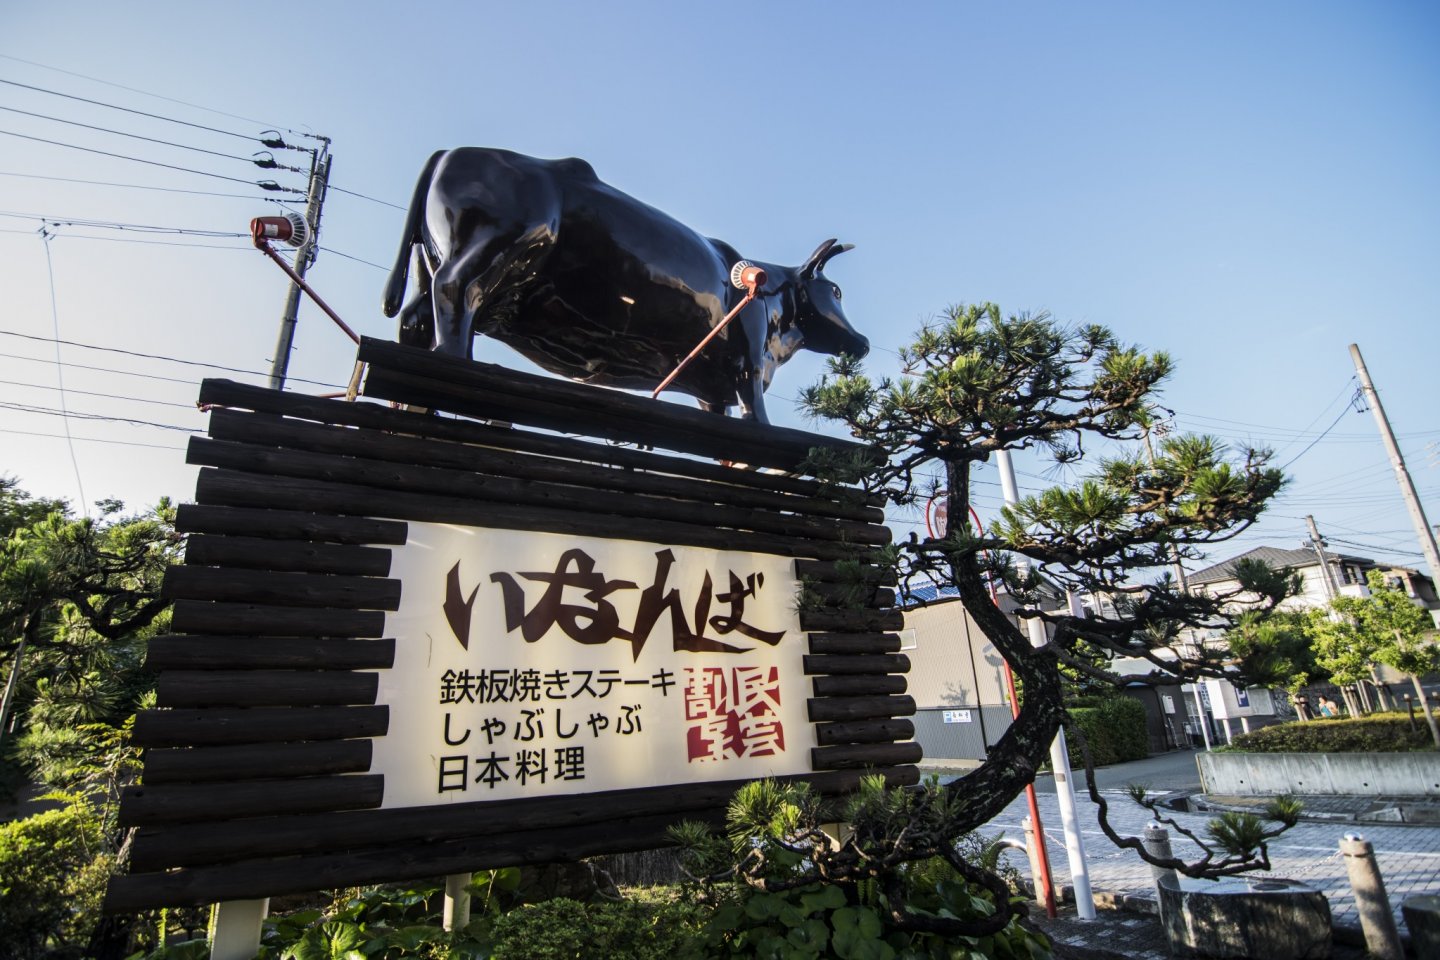 이나바 간판 위에 있는 소의 모습. 소고기를 대하는 이나바의 태도는 매우 진지합니다.